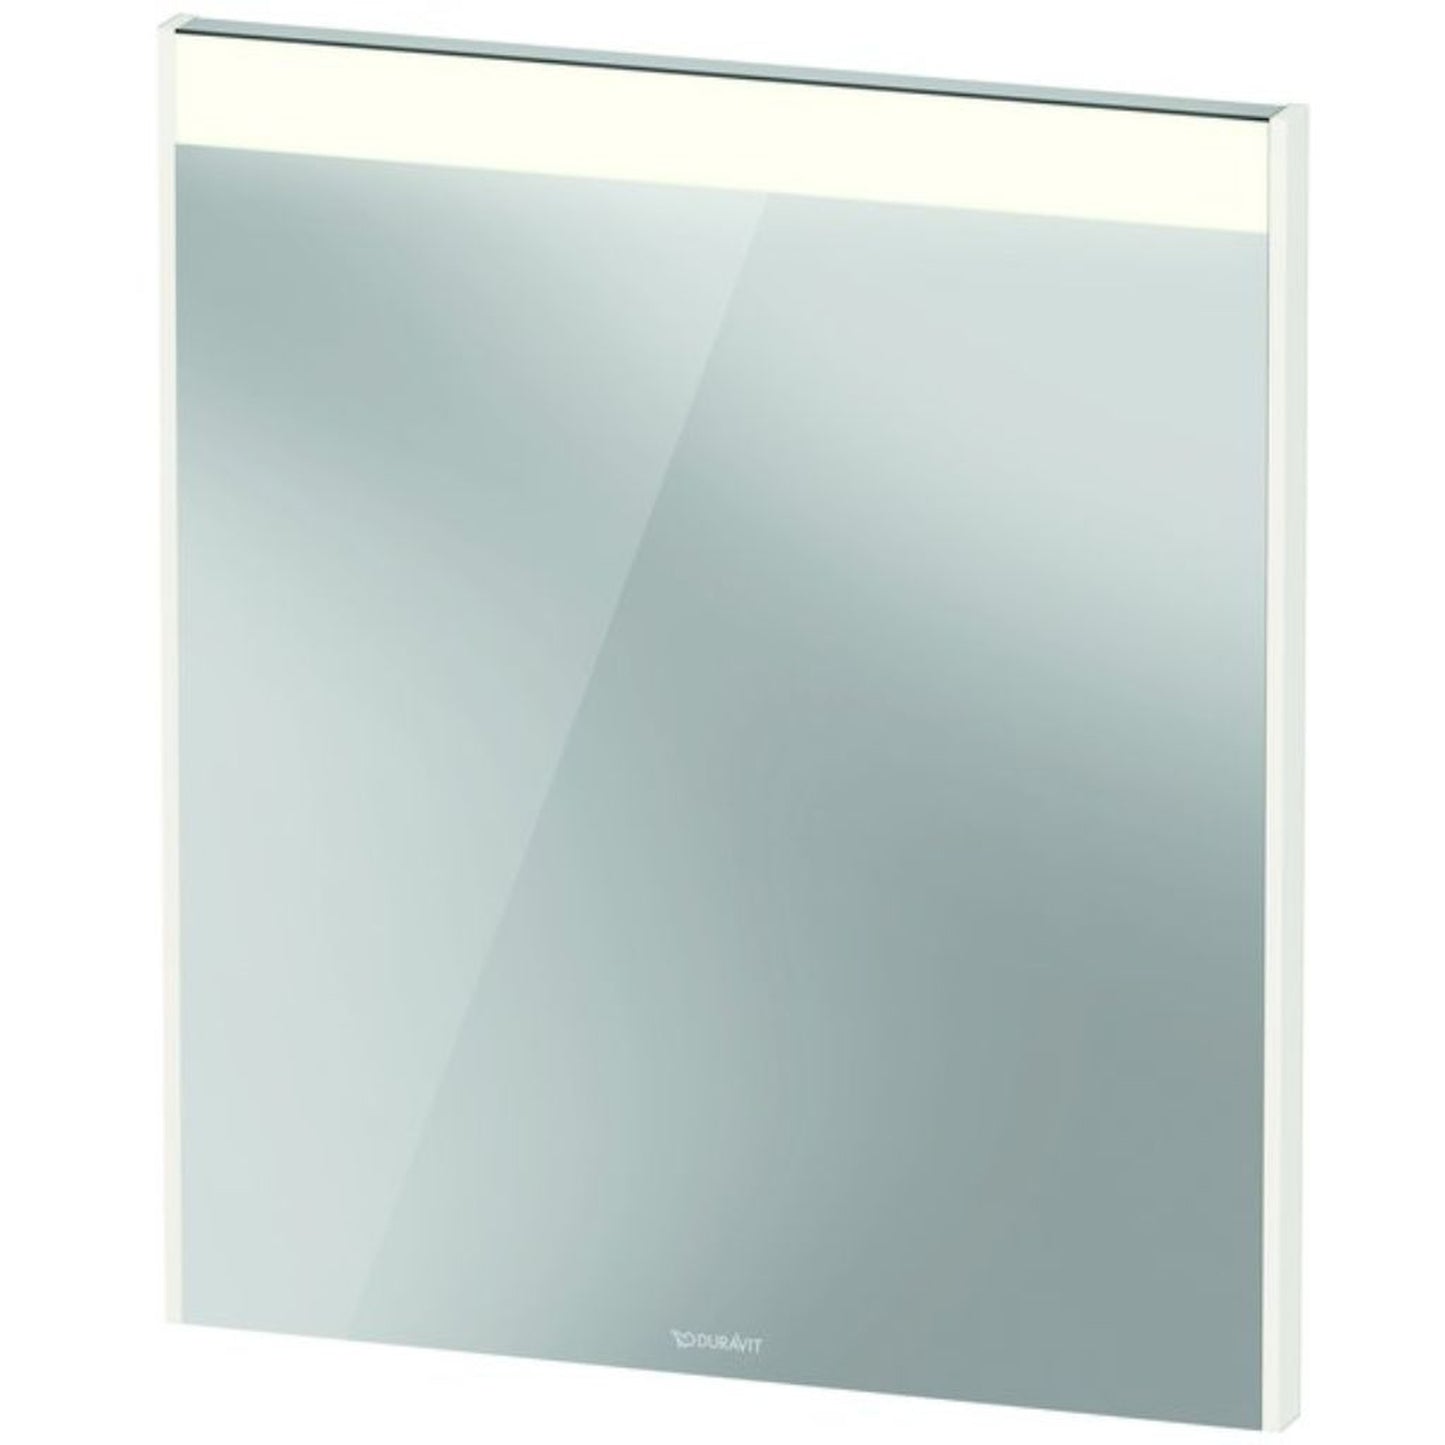 Duravit Brioso 24" x 28" x 2" Mirror With Lighting White High Gloss